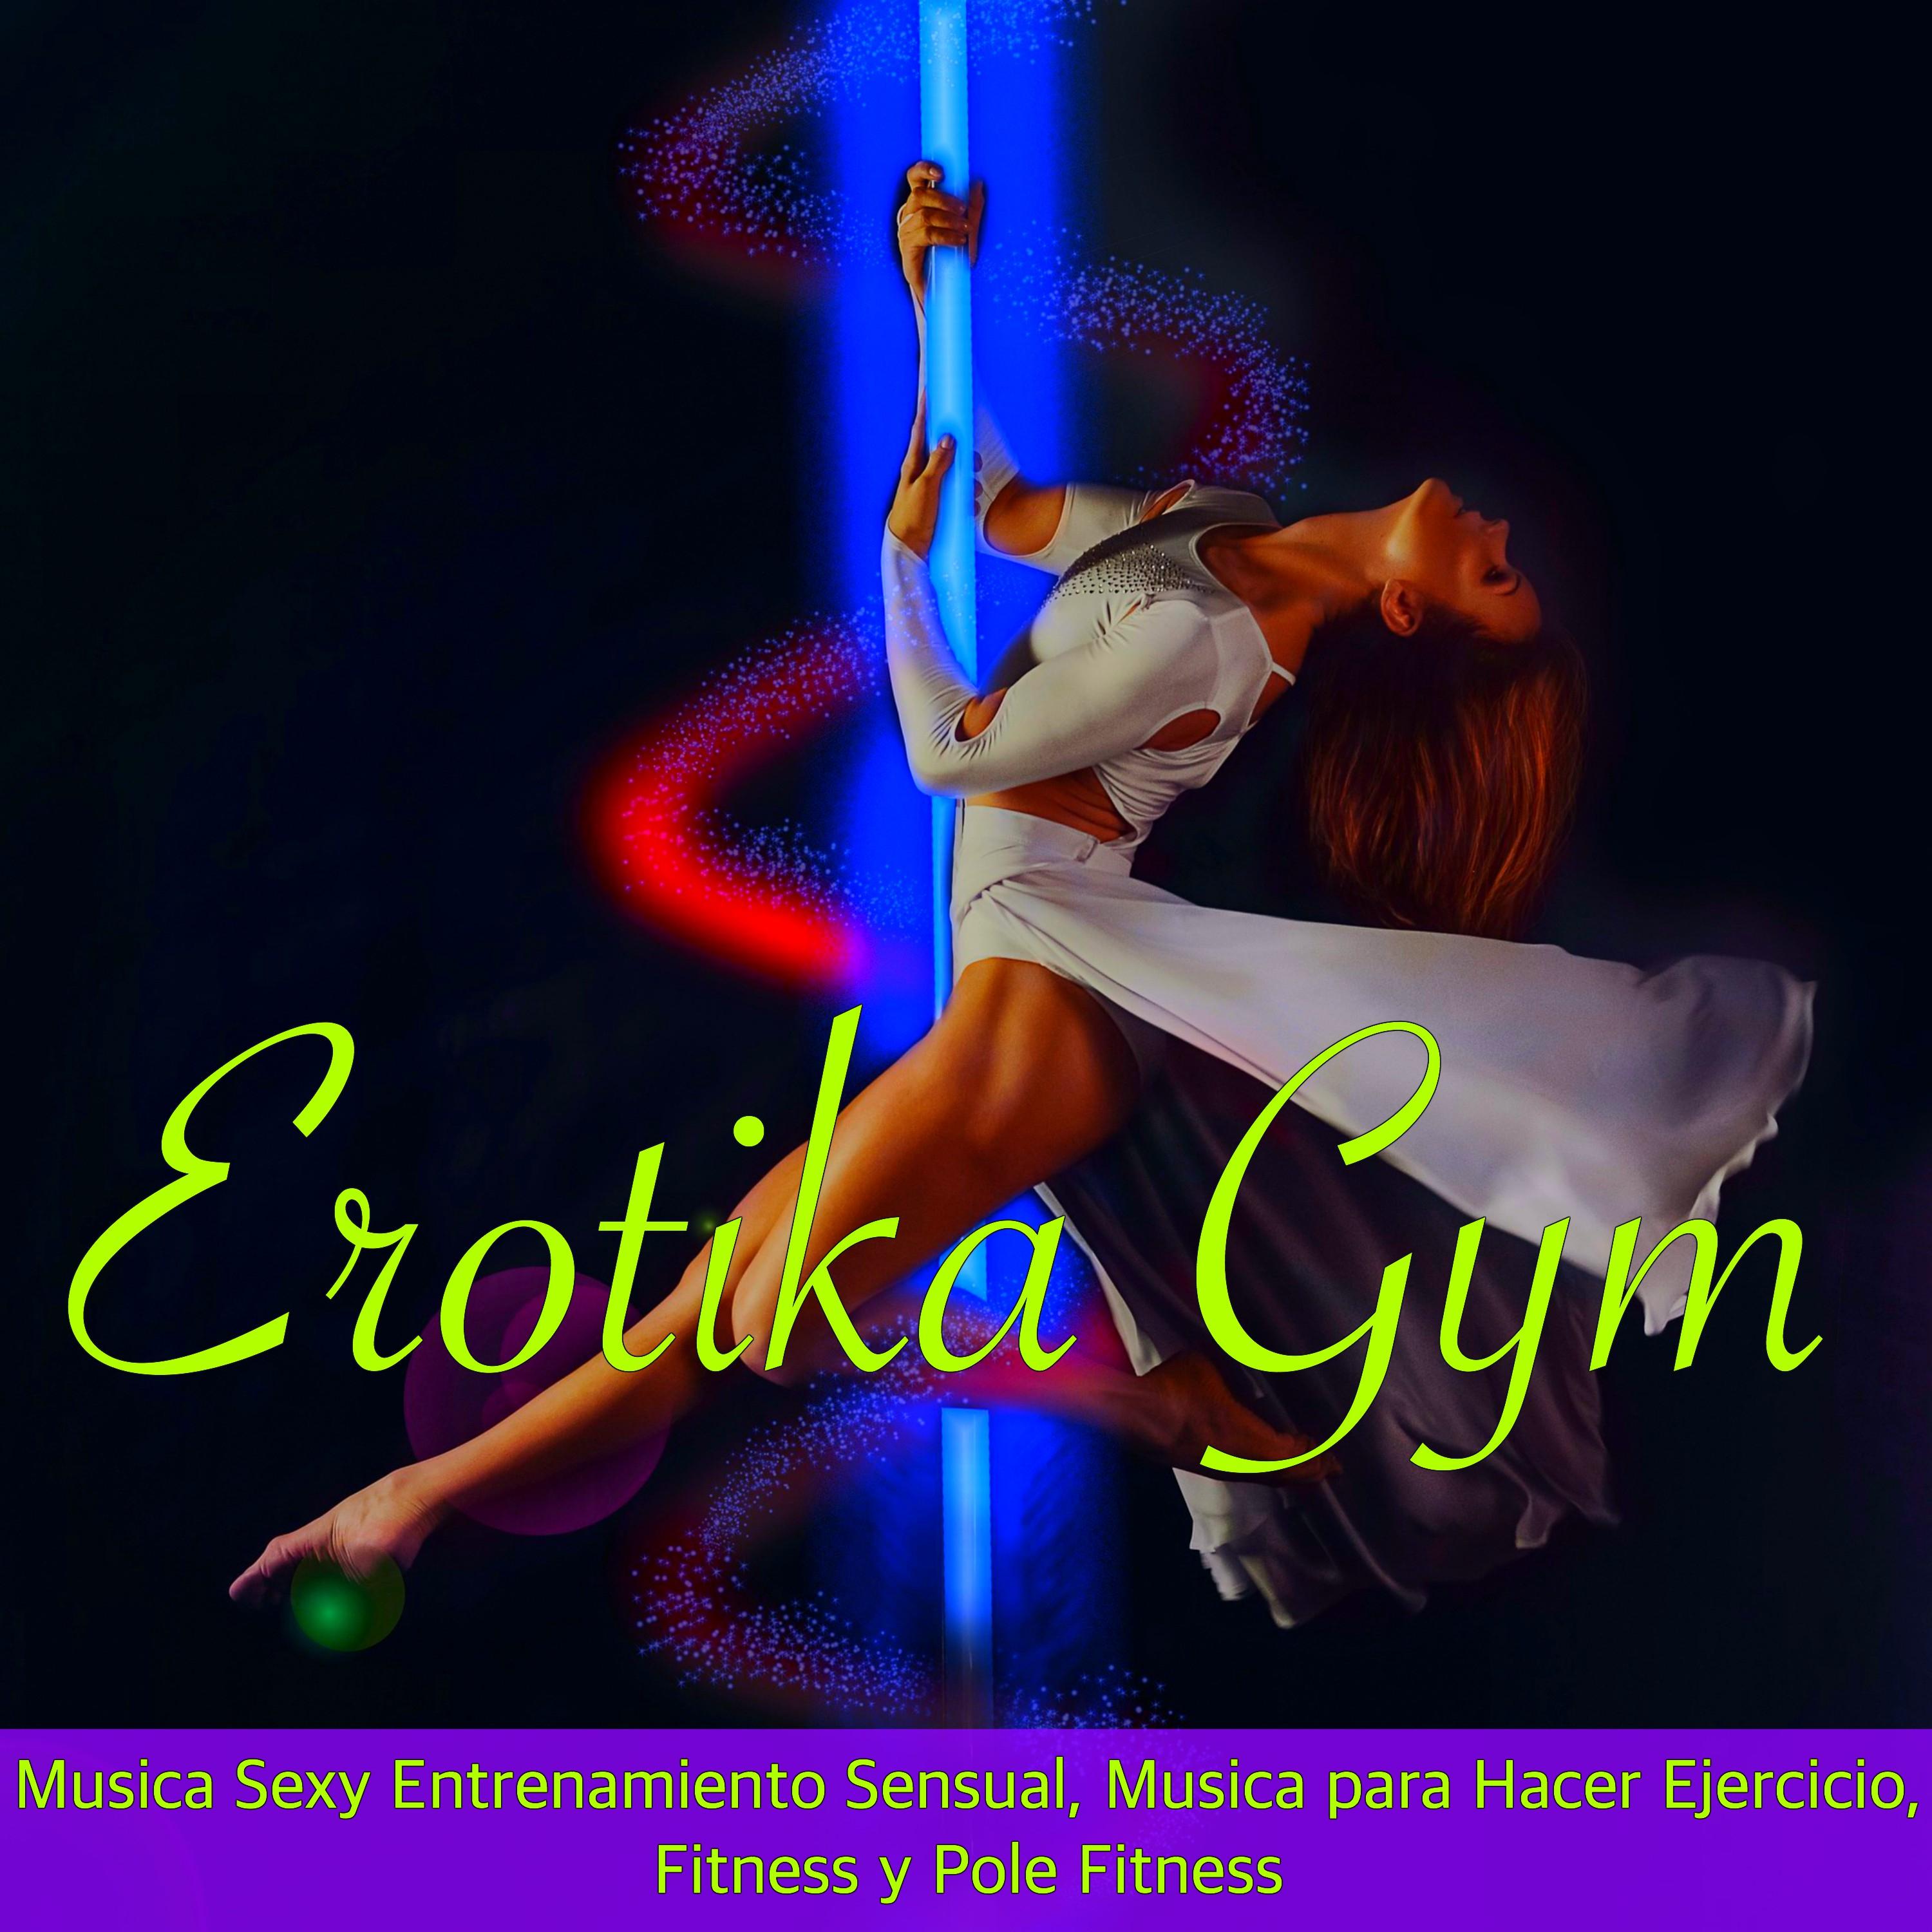 Erotika Gym - Musica **** Entrenamiento Sensual, Musica para Hacer Ejercicio, Fitness y Pole Fitness